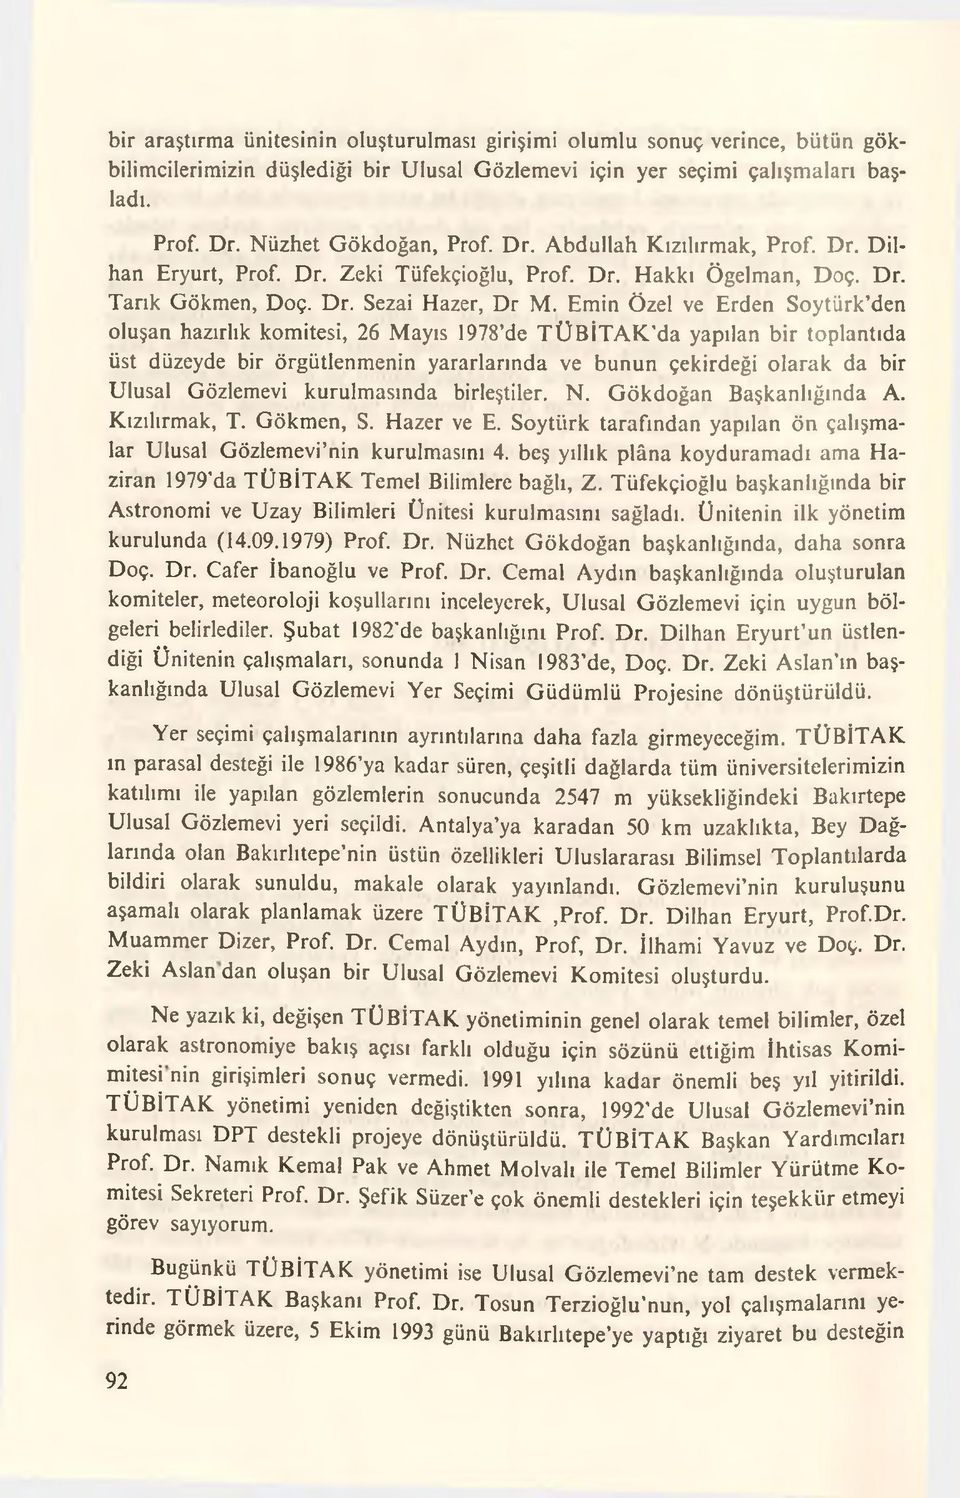 Emin Özel ve Erden Soytürk den oluşan hazırlık komitesi, 26 Mayıs 1978 de TÜBİTAK da yapılan bir toplantıda üst düzeyde bir örgütlenmenin yararlarında ve bunun çekirdeği olarak da bir Ulusal